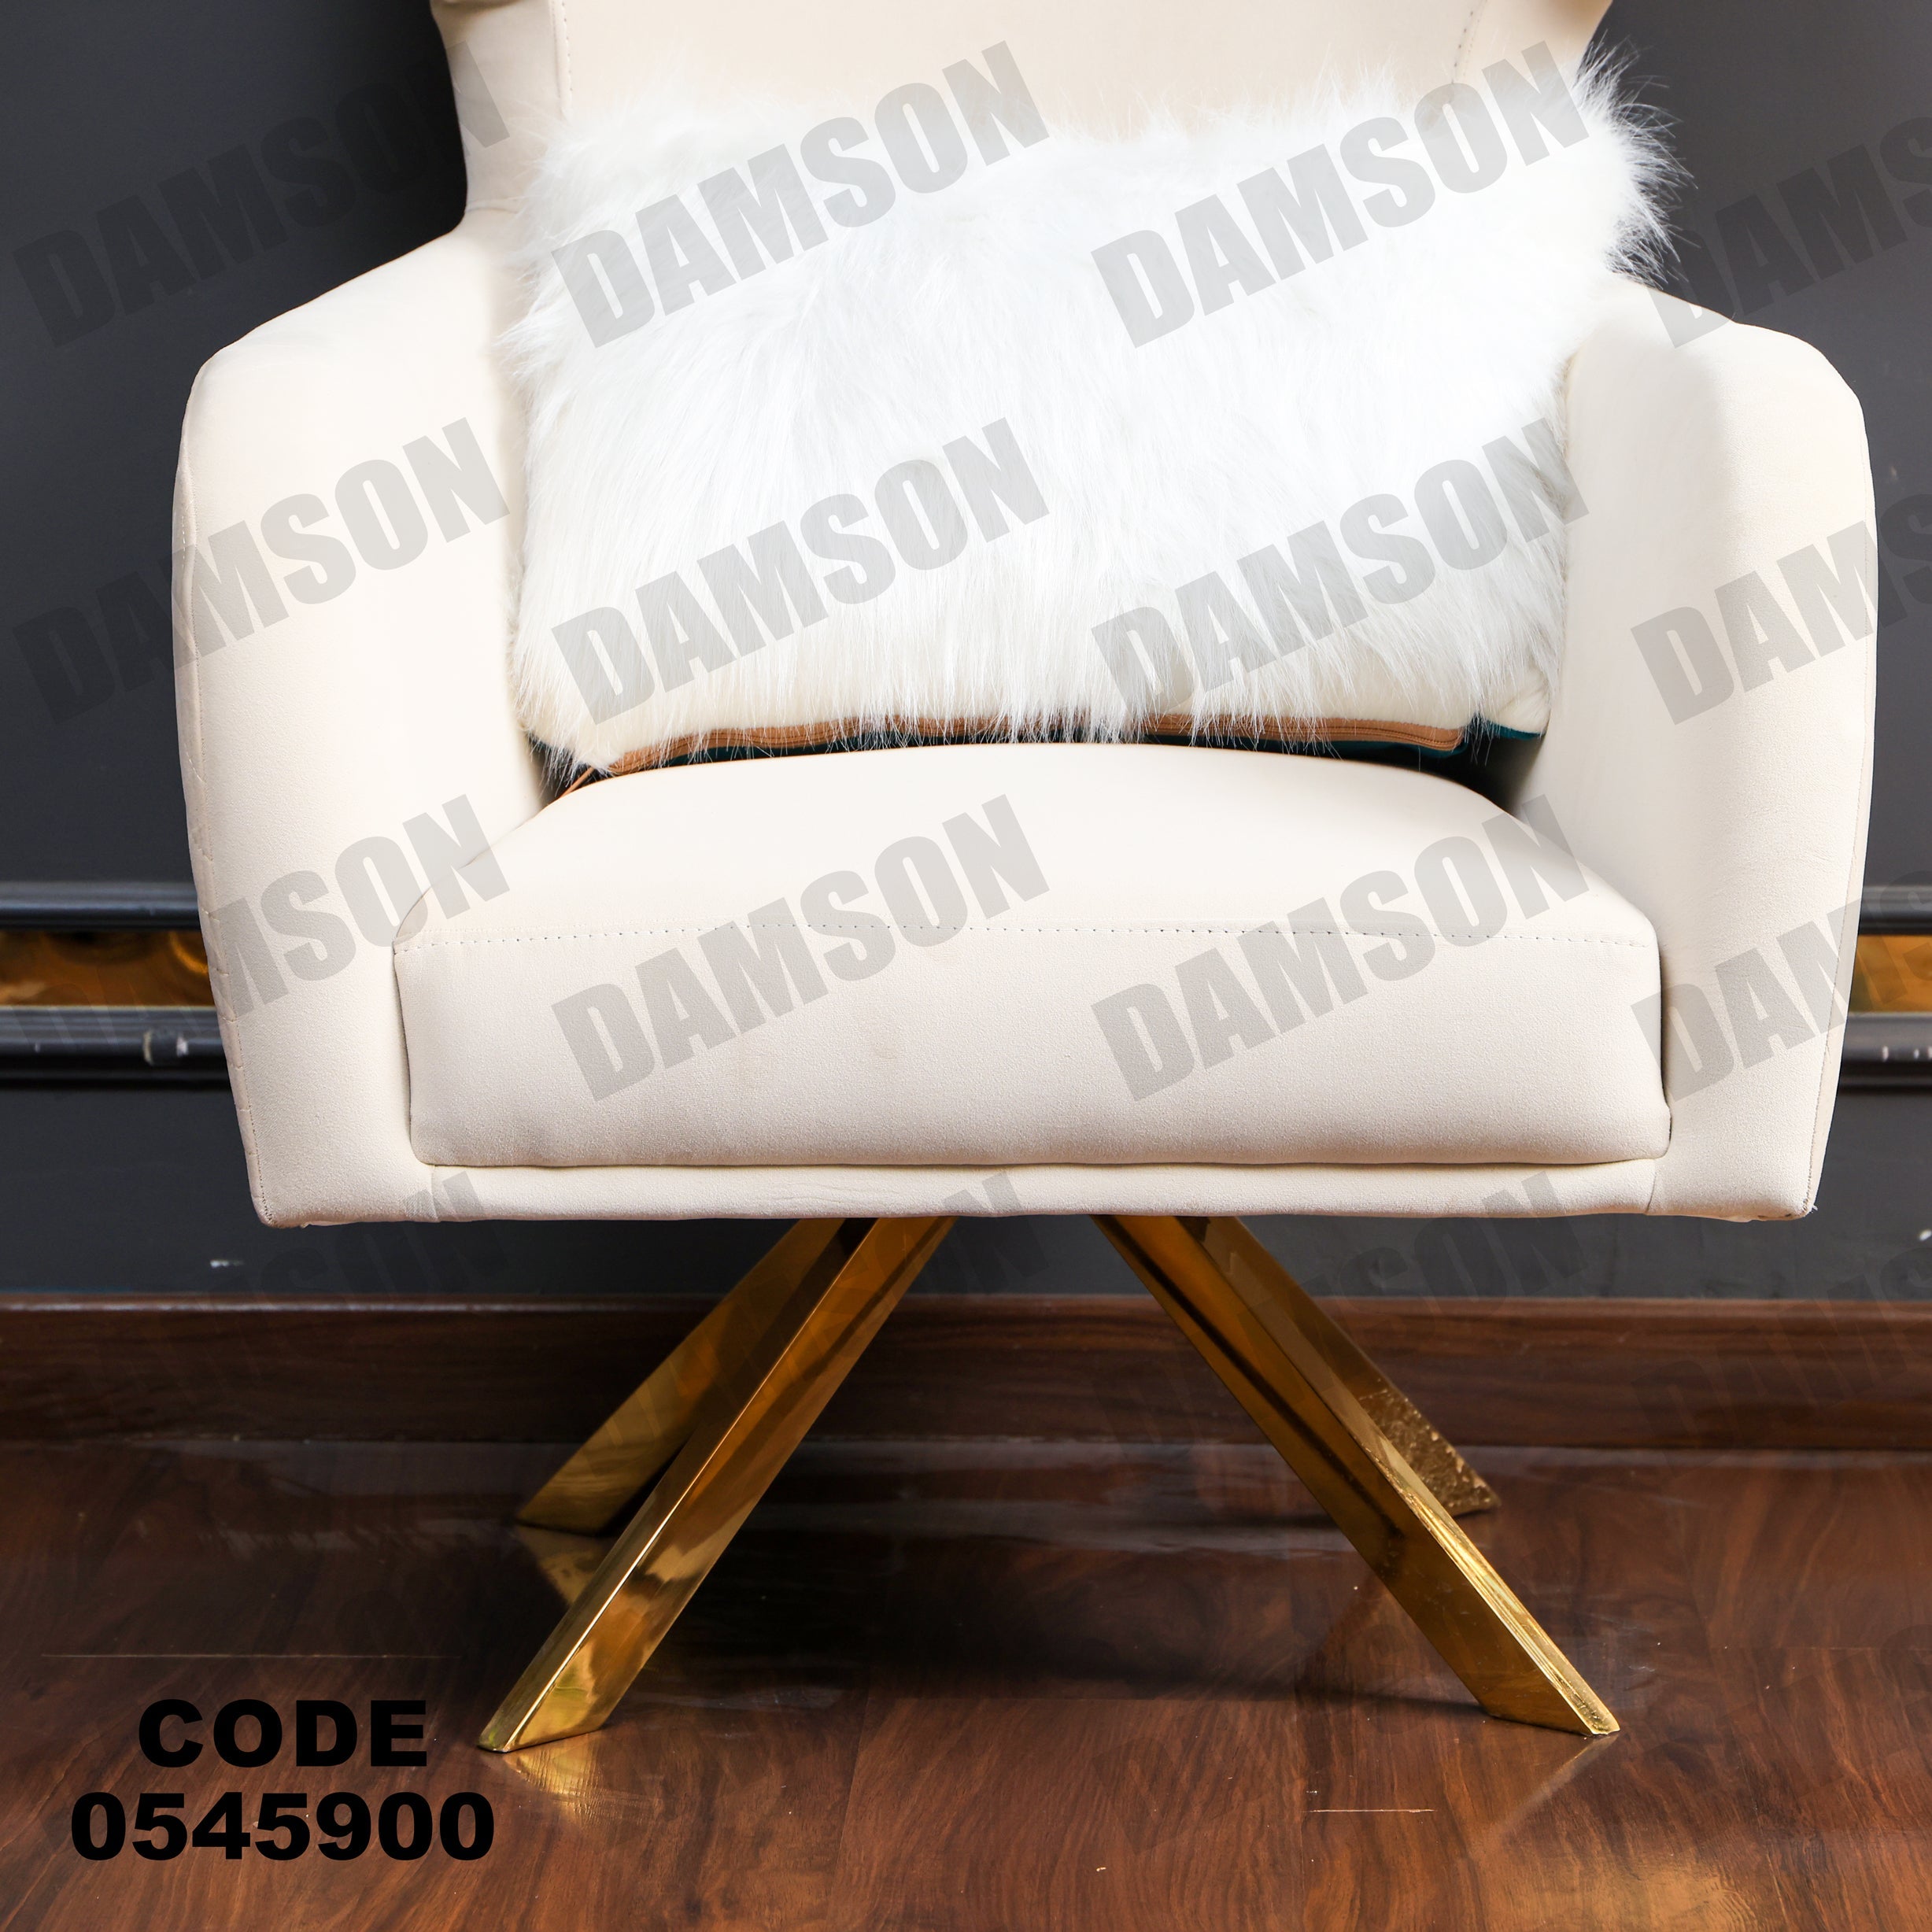 فوتية 2-459 - Damson Furnitureفوتية 2-459